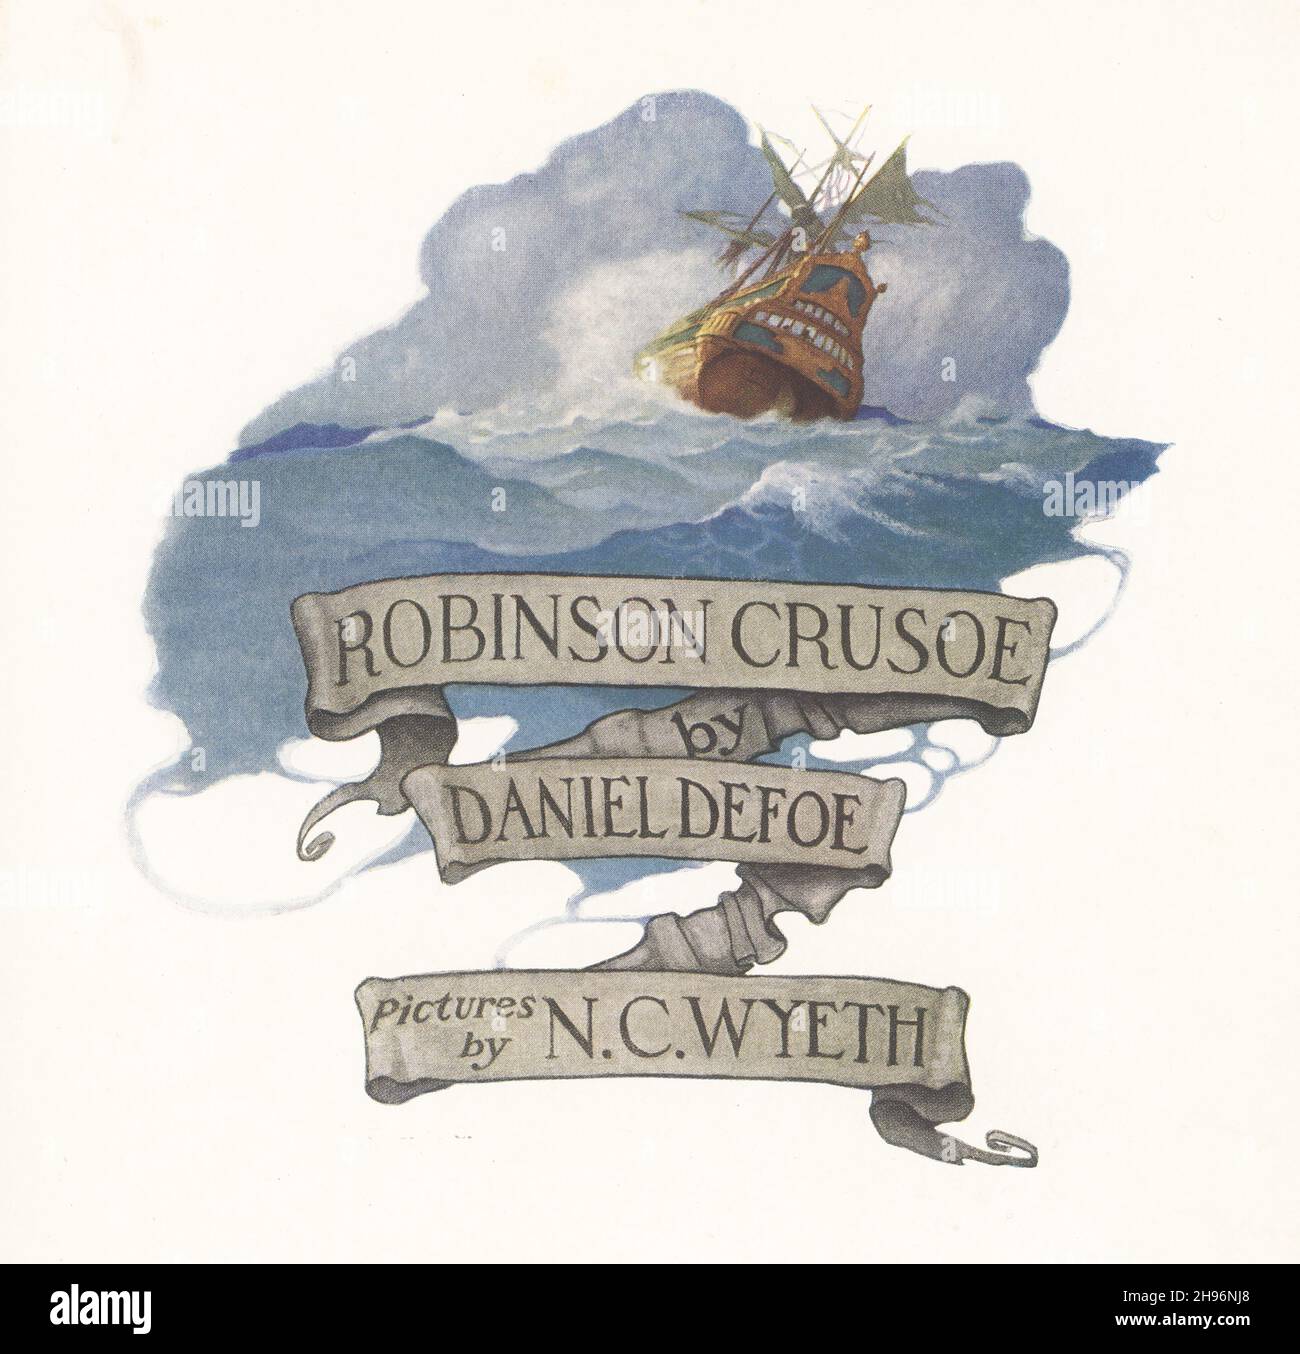 Robinson Crusoe est un roman écrit par le romancier anglais Daniel Devoe et publié en 1719.Une autobiographie fictive, elle raconte l'histoire d'une castaway anglaise nommée Robinson Crusoe (le navire qui a naufragé est vu ici) qui a passé 28 ans sur une île tropicale éloignée près du Venezuela avant d'être sauvé.Newell Convers Wyeth, connu sous le nom de N. C. Wyeth, était un artiste et illustrateur américain.Il fut l'élève de l'artiste Howard Pyle et devint l'un des plus grands illustrateurs d'Amérique. Banque D'Images